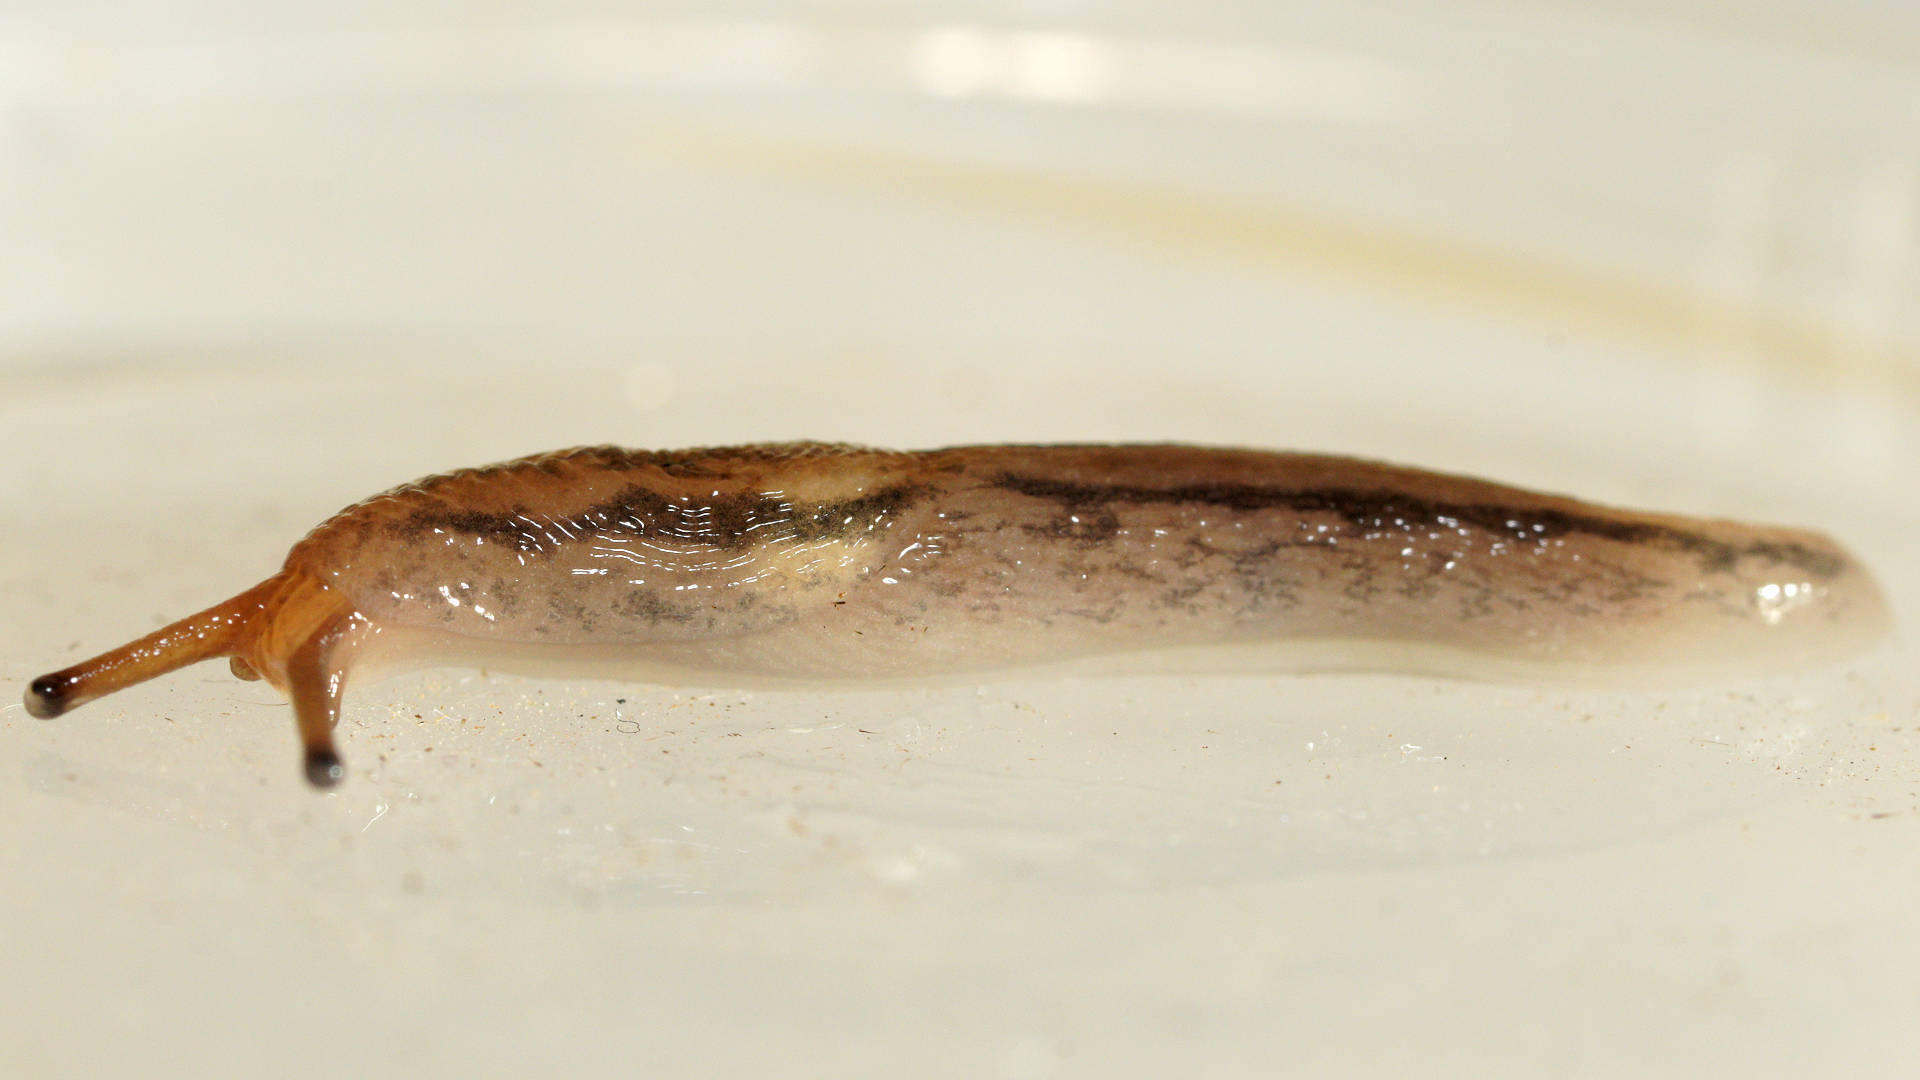 Threeband Slug (Ambigolimax sp)